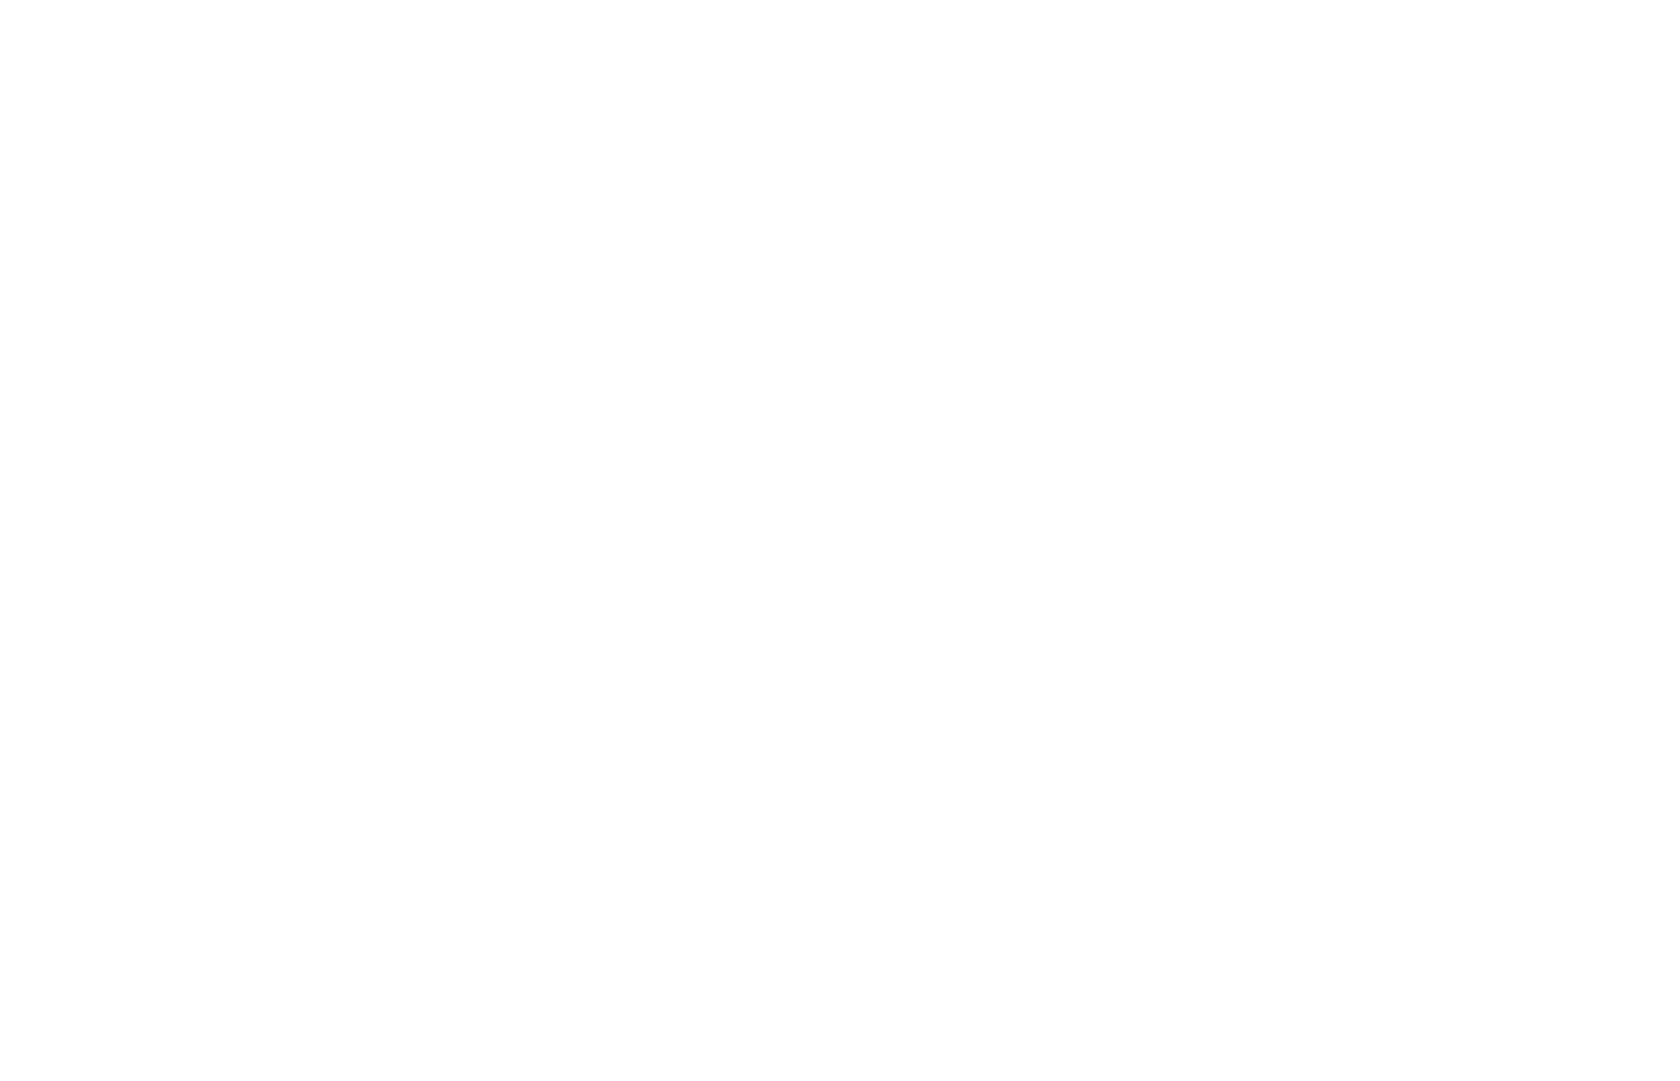 Cцена из спектакля «Смерть Иоанна Грозного» А.К. Толстого. Иоанн – Олег Окулевич. Театр им. В.Ф. Комиссаржевской (реж. Р. Агамирзян). 1976–1977